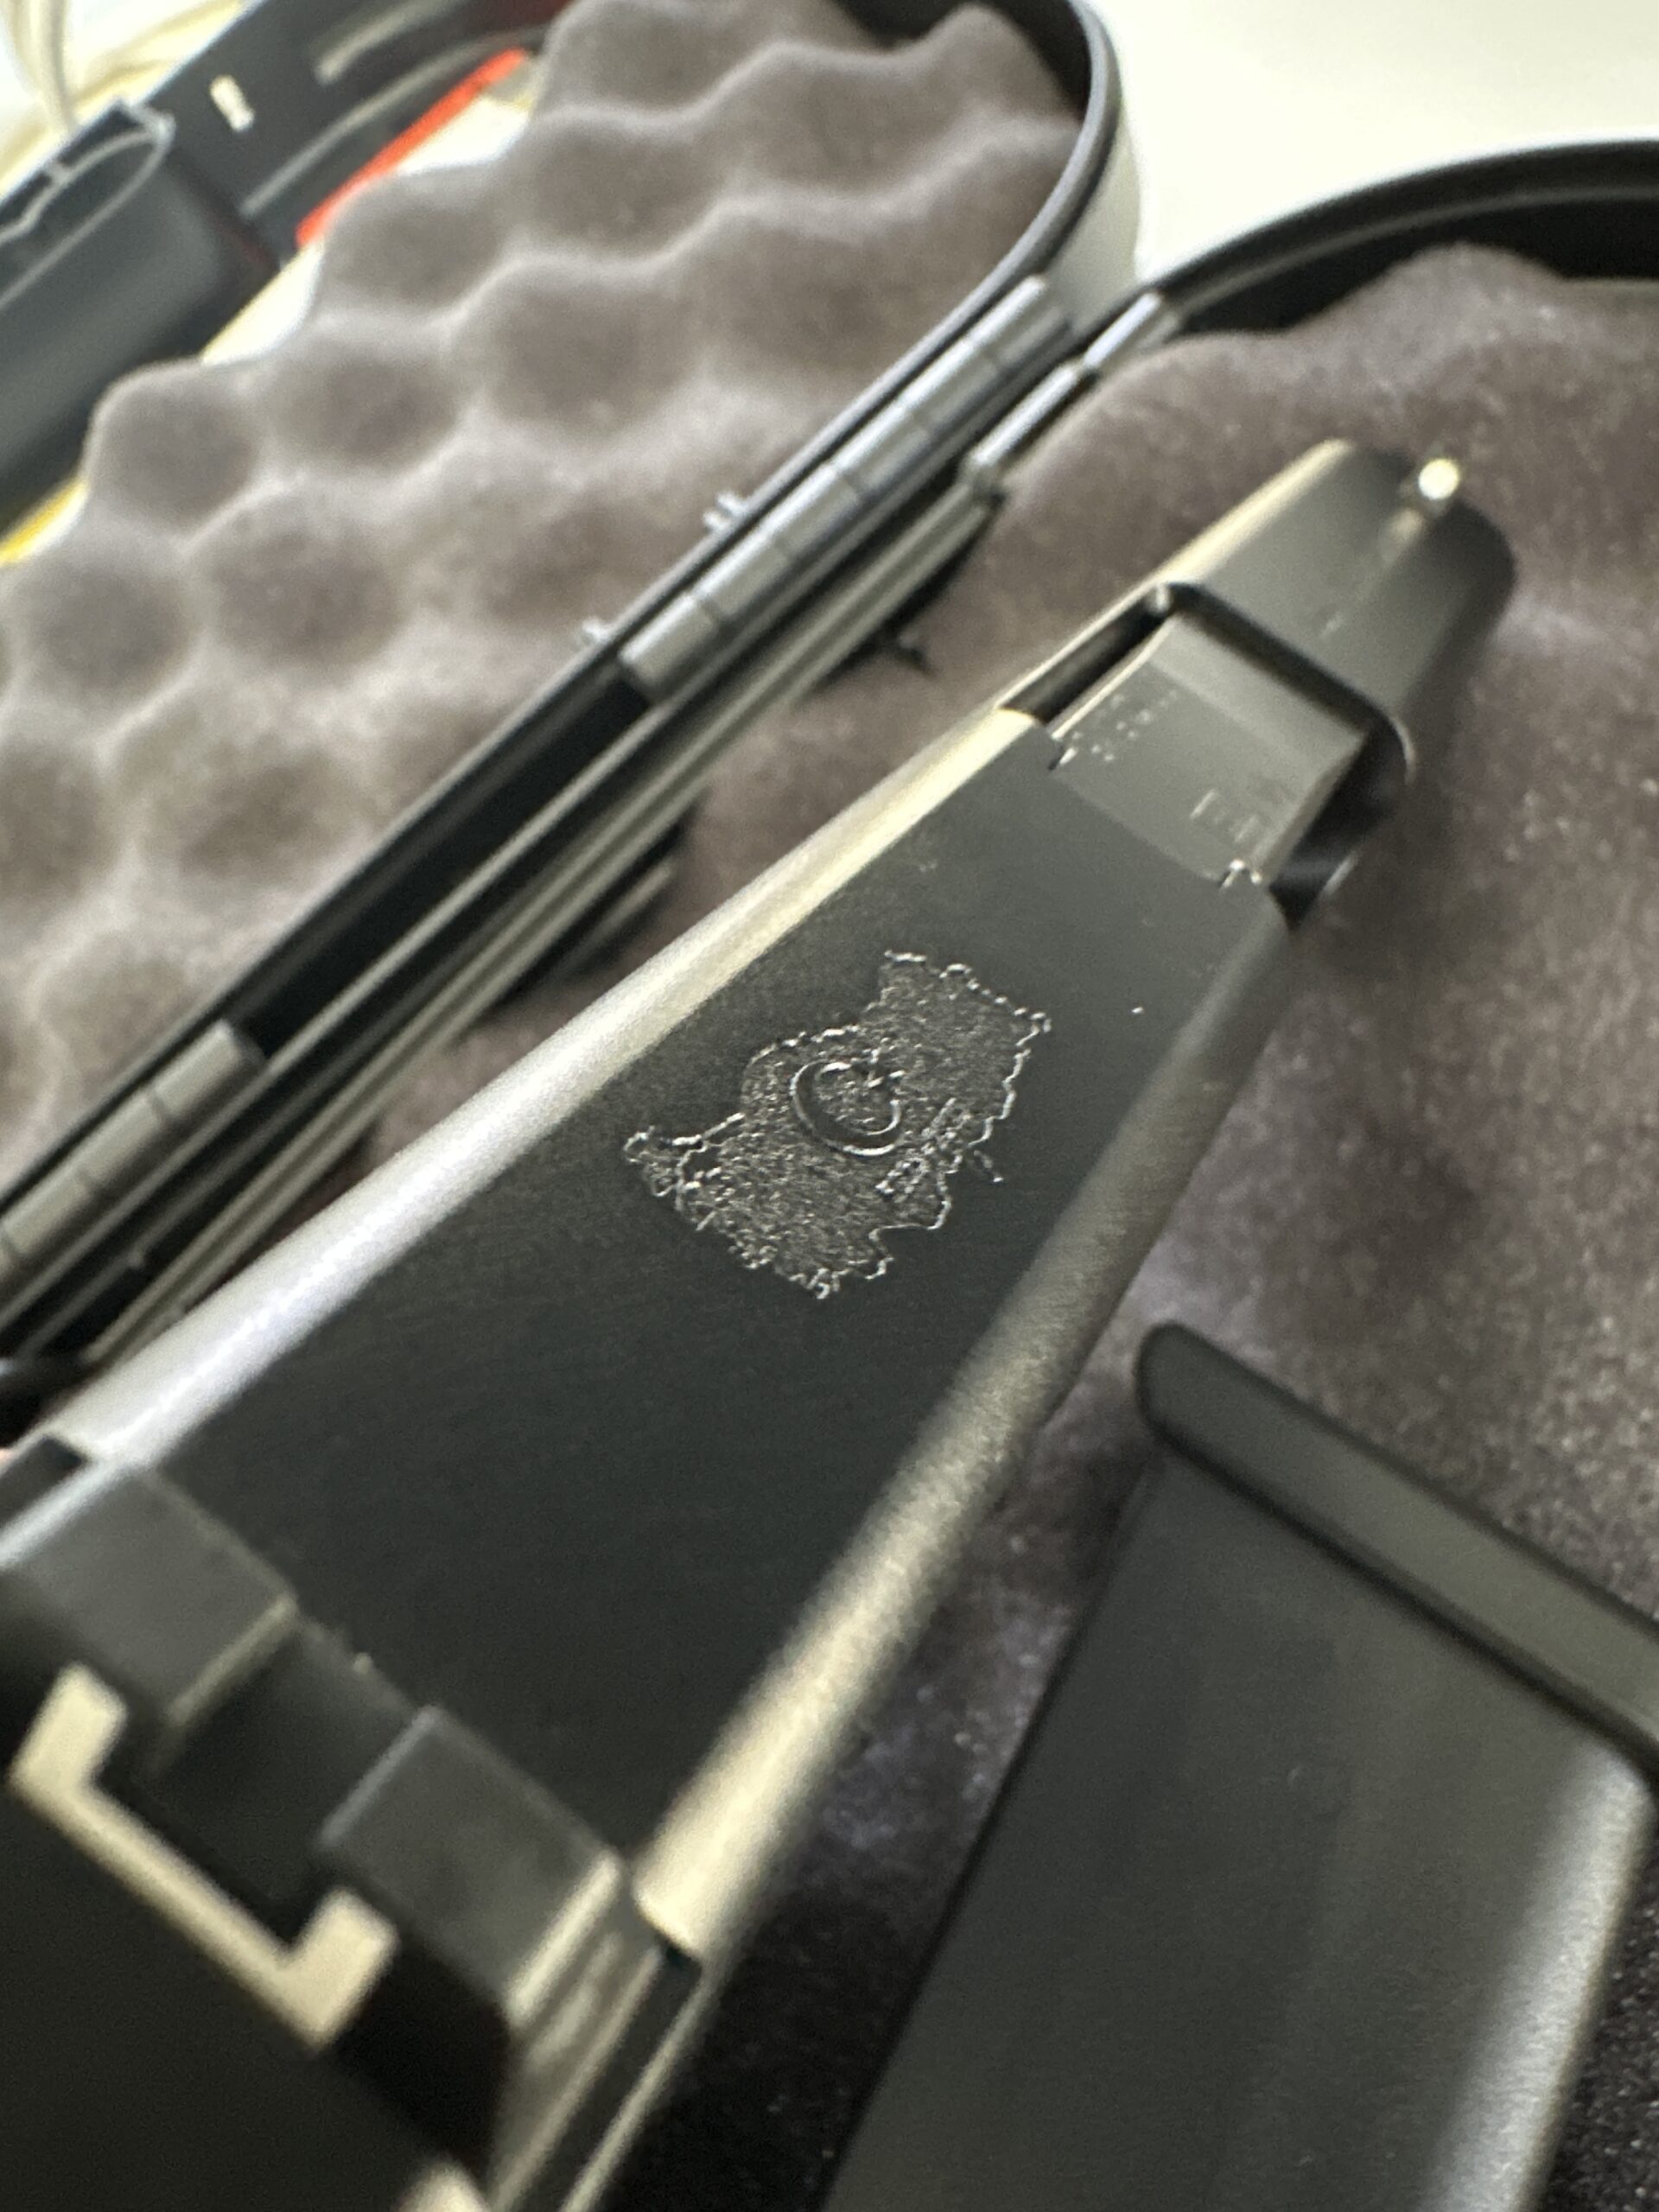 Sahibinden sıfır özel seri Glock 43x